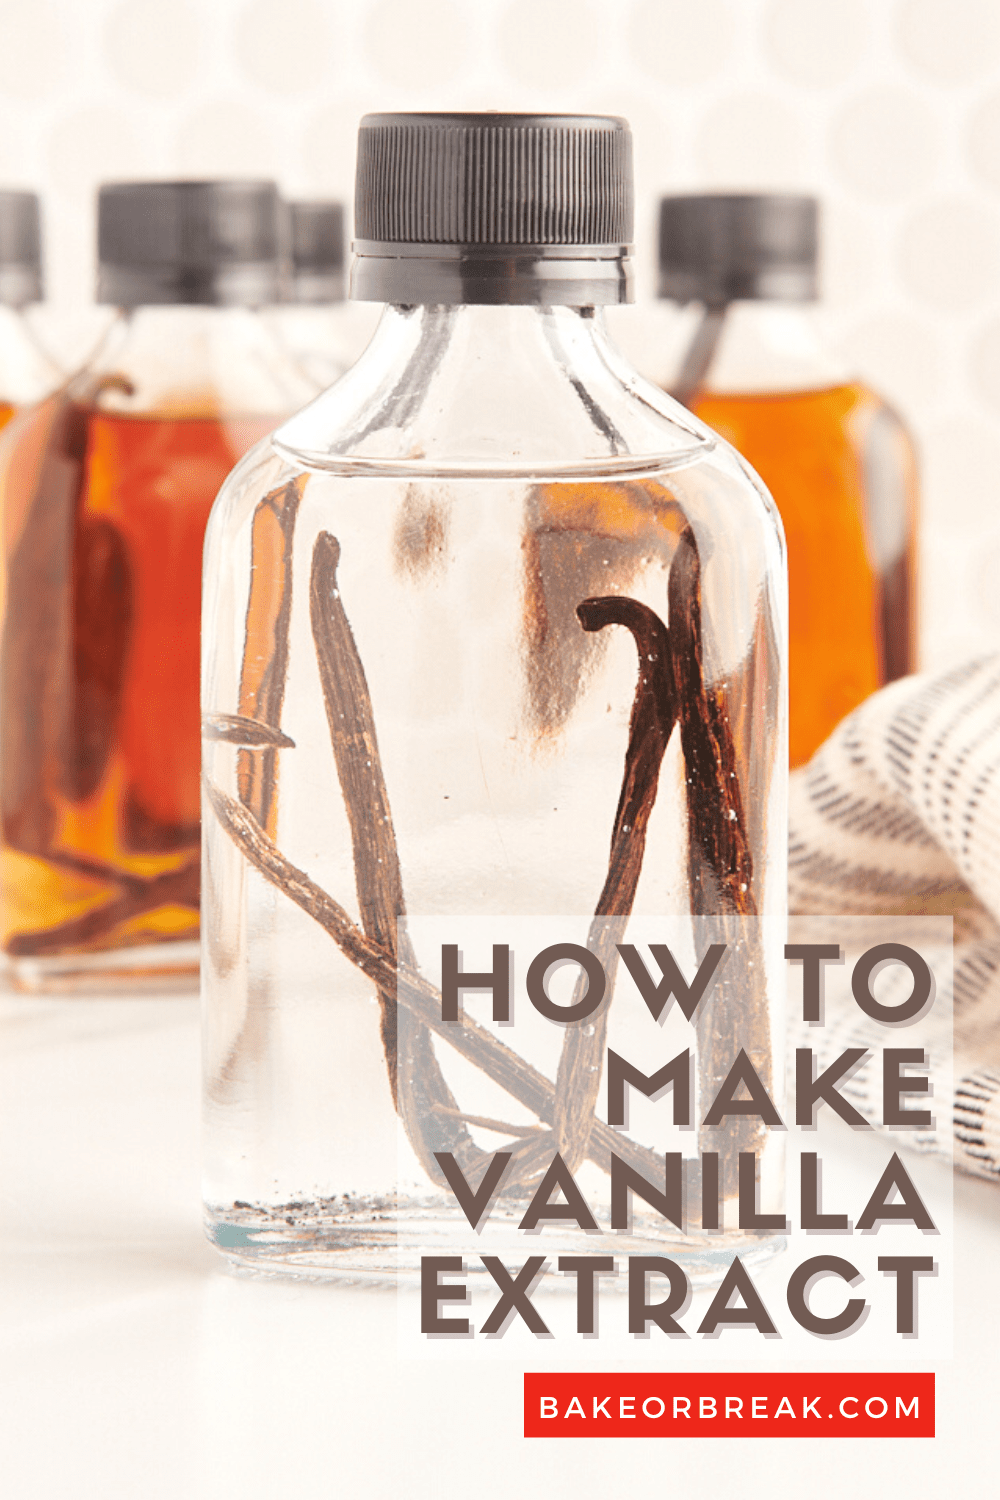 How to Make Vanilla Extract bakeorbreak.com